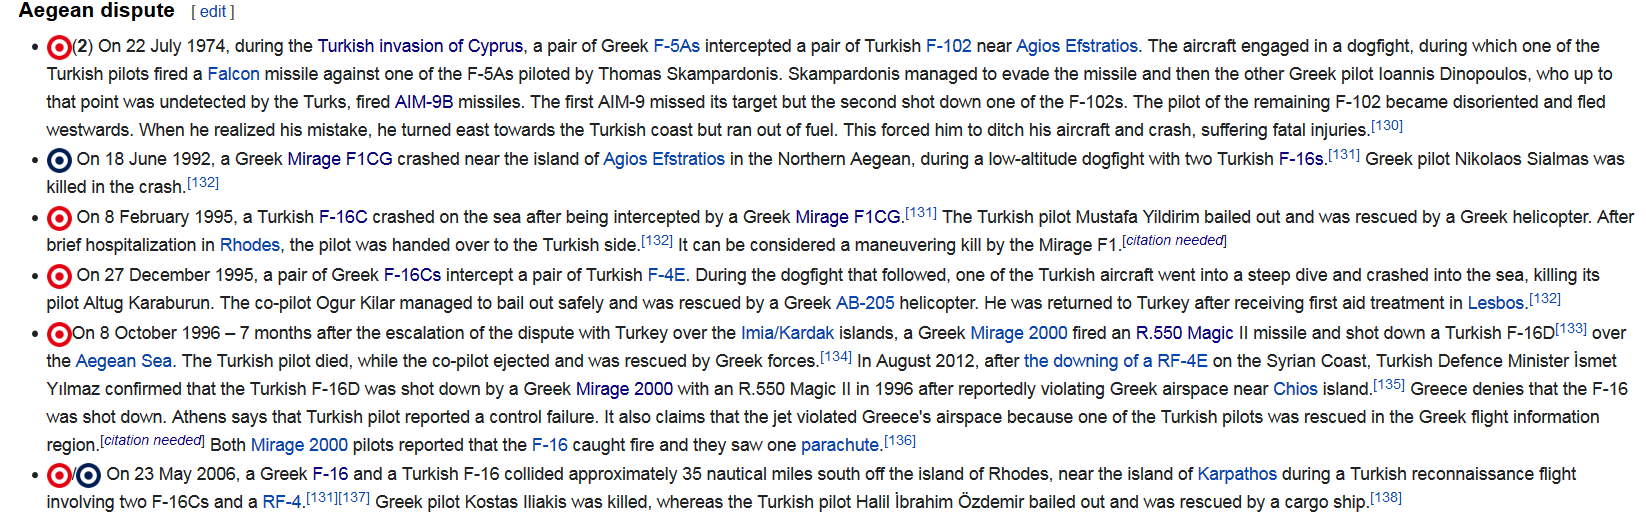 Screenshot_2021-08-04 List of aircraft shootdowns - Wikipedia.png